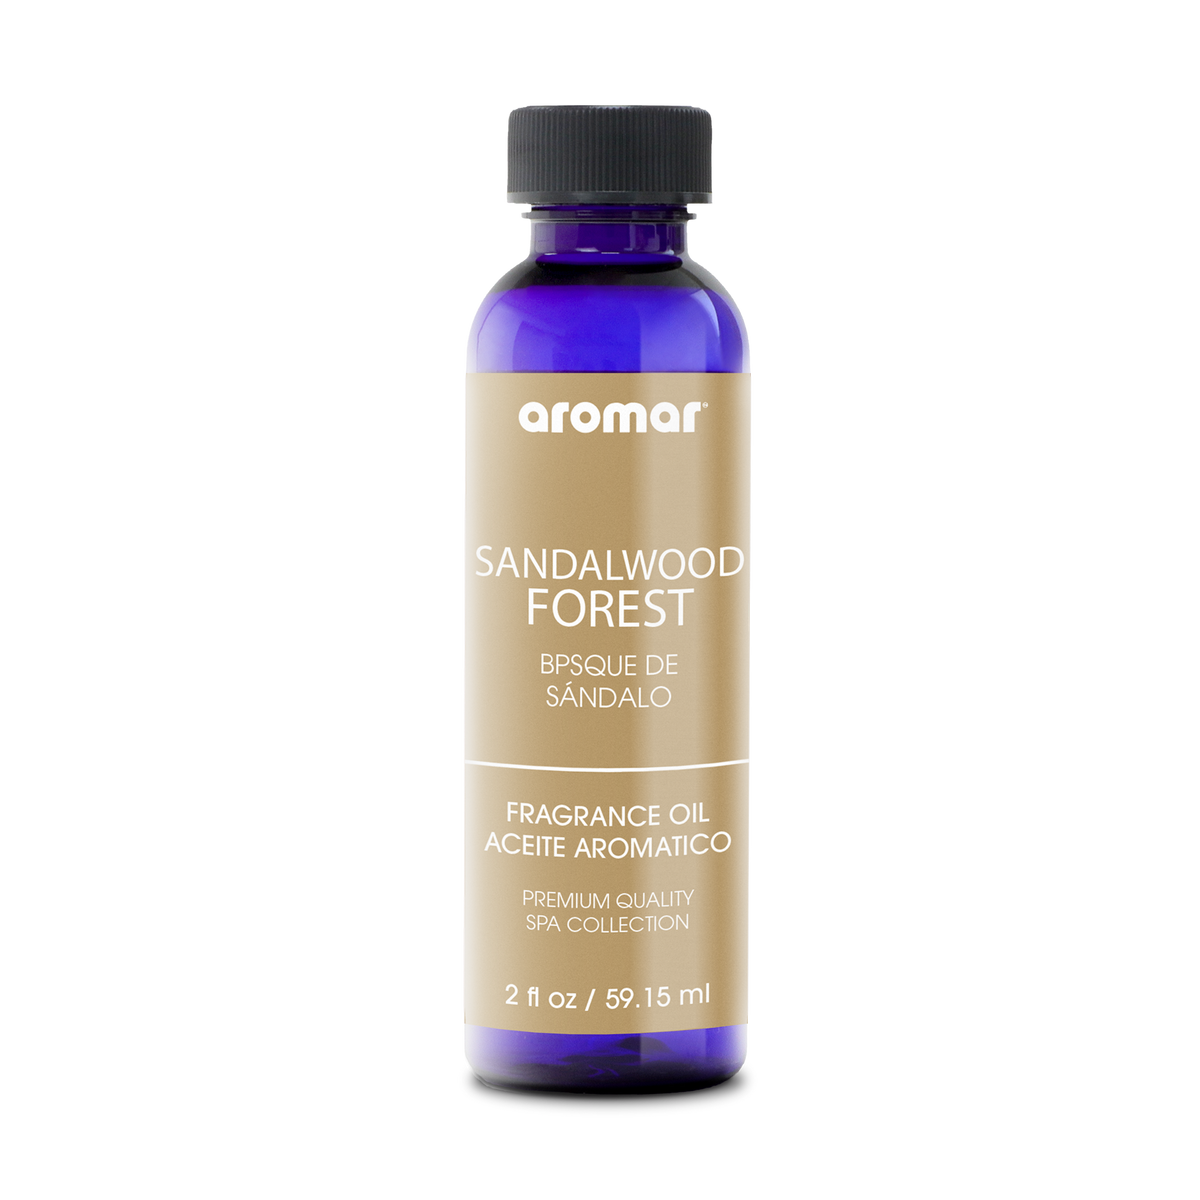 Aromar Fragrance Oil Sandalwood Forest